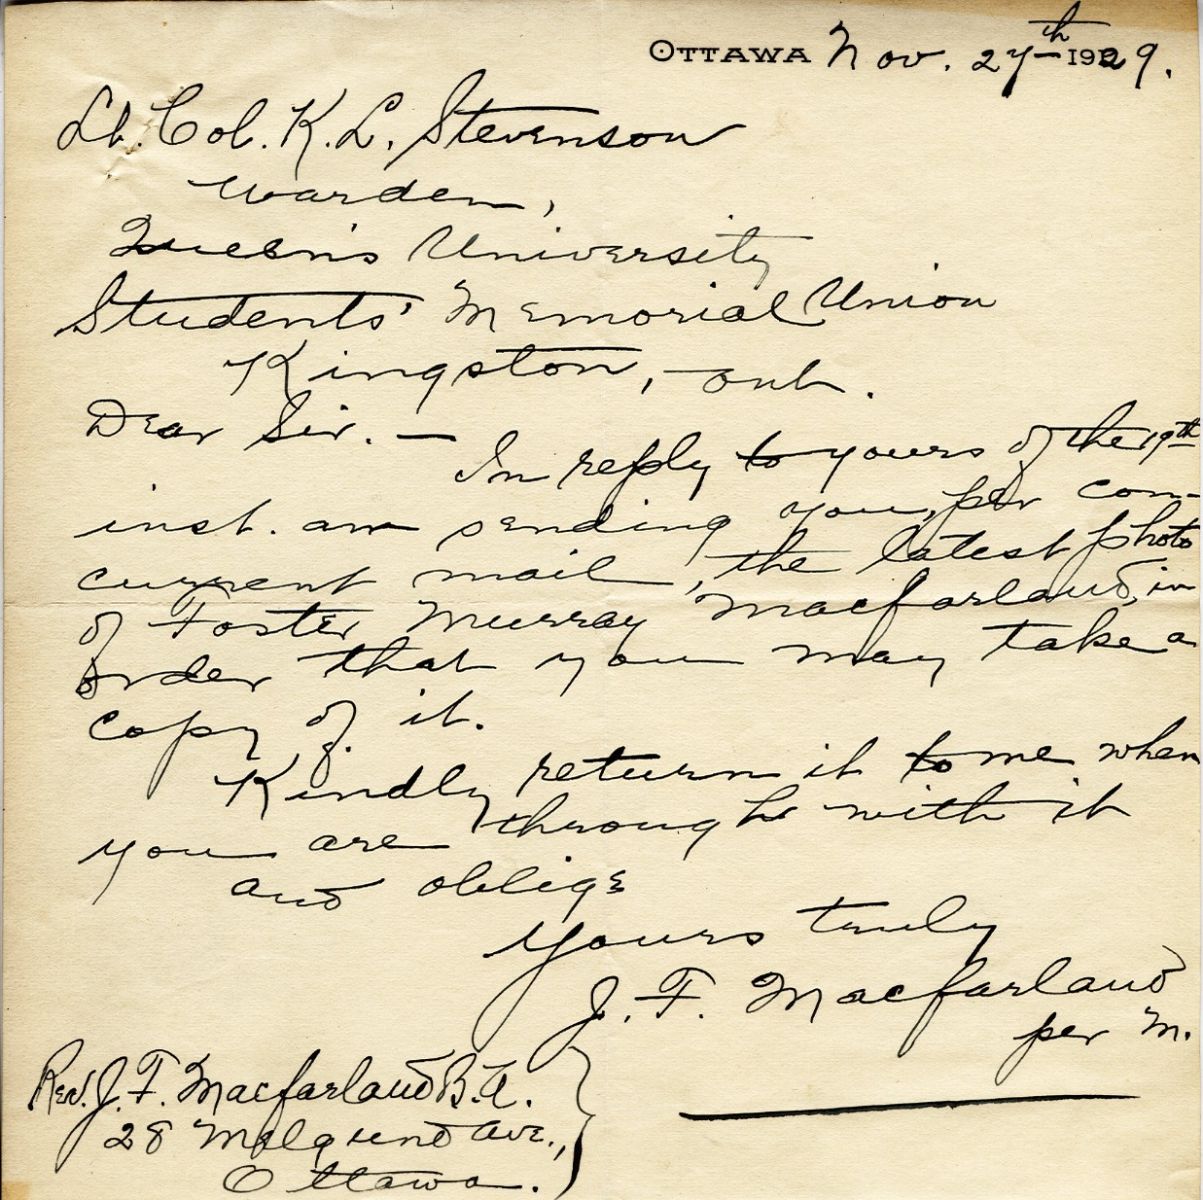 Letter from J.F. Macfarland to Lt. Col. K.L. Stevenson, 27th November 1929